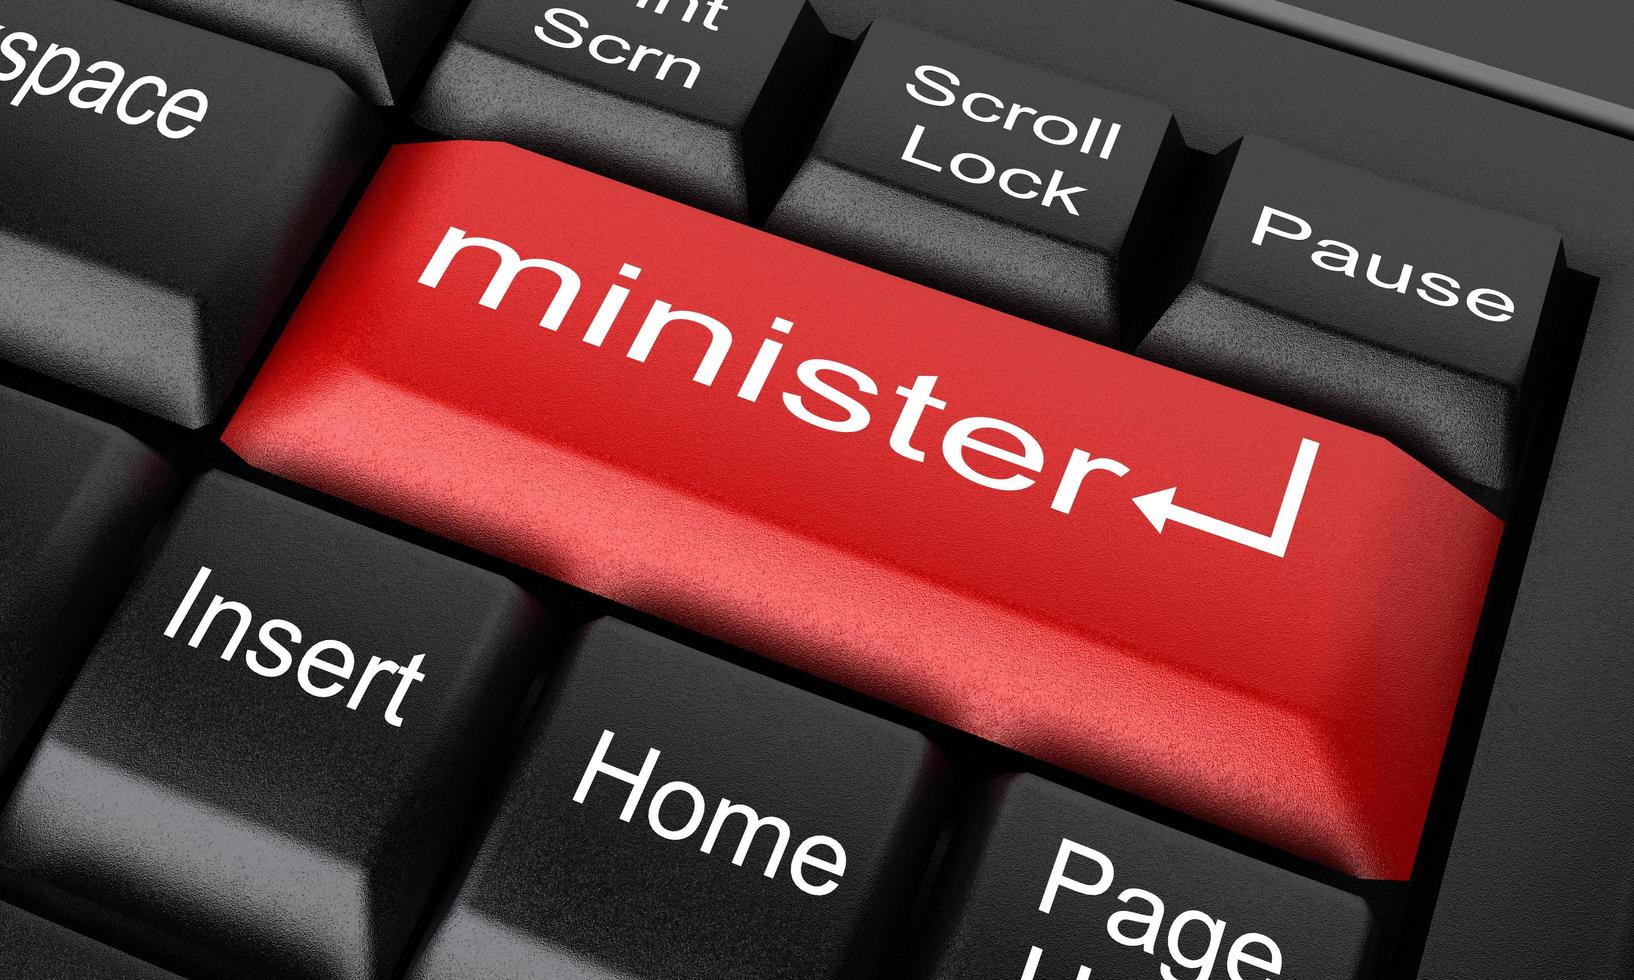 Palabra de ministro en el botón rojo del teclado foto